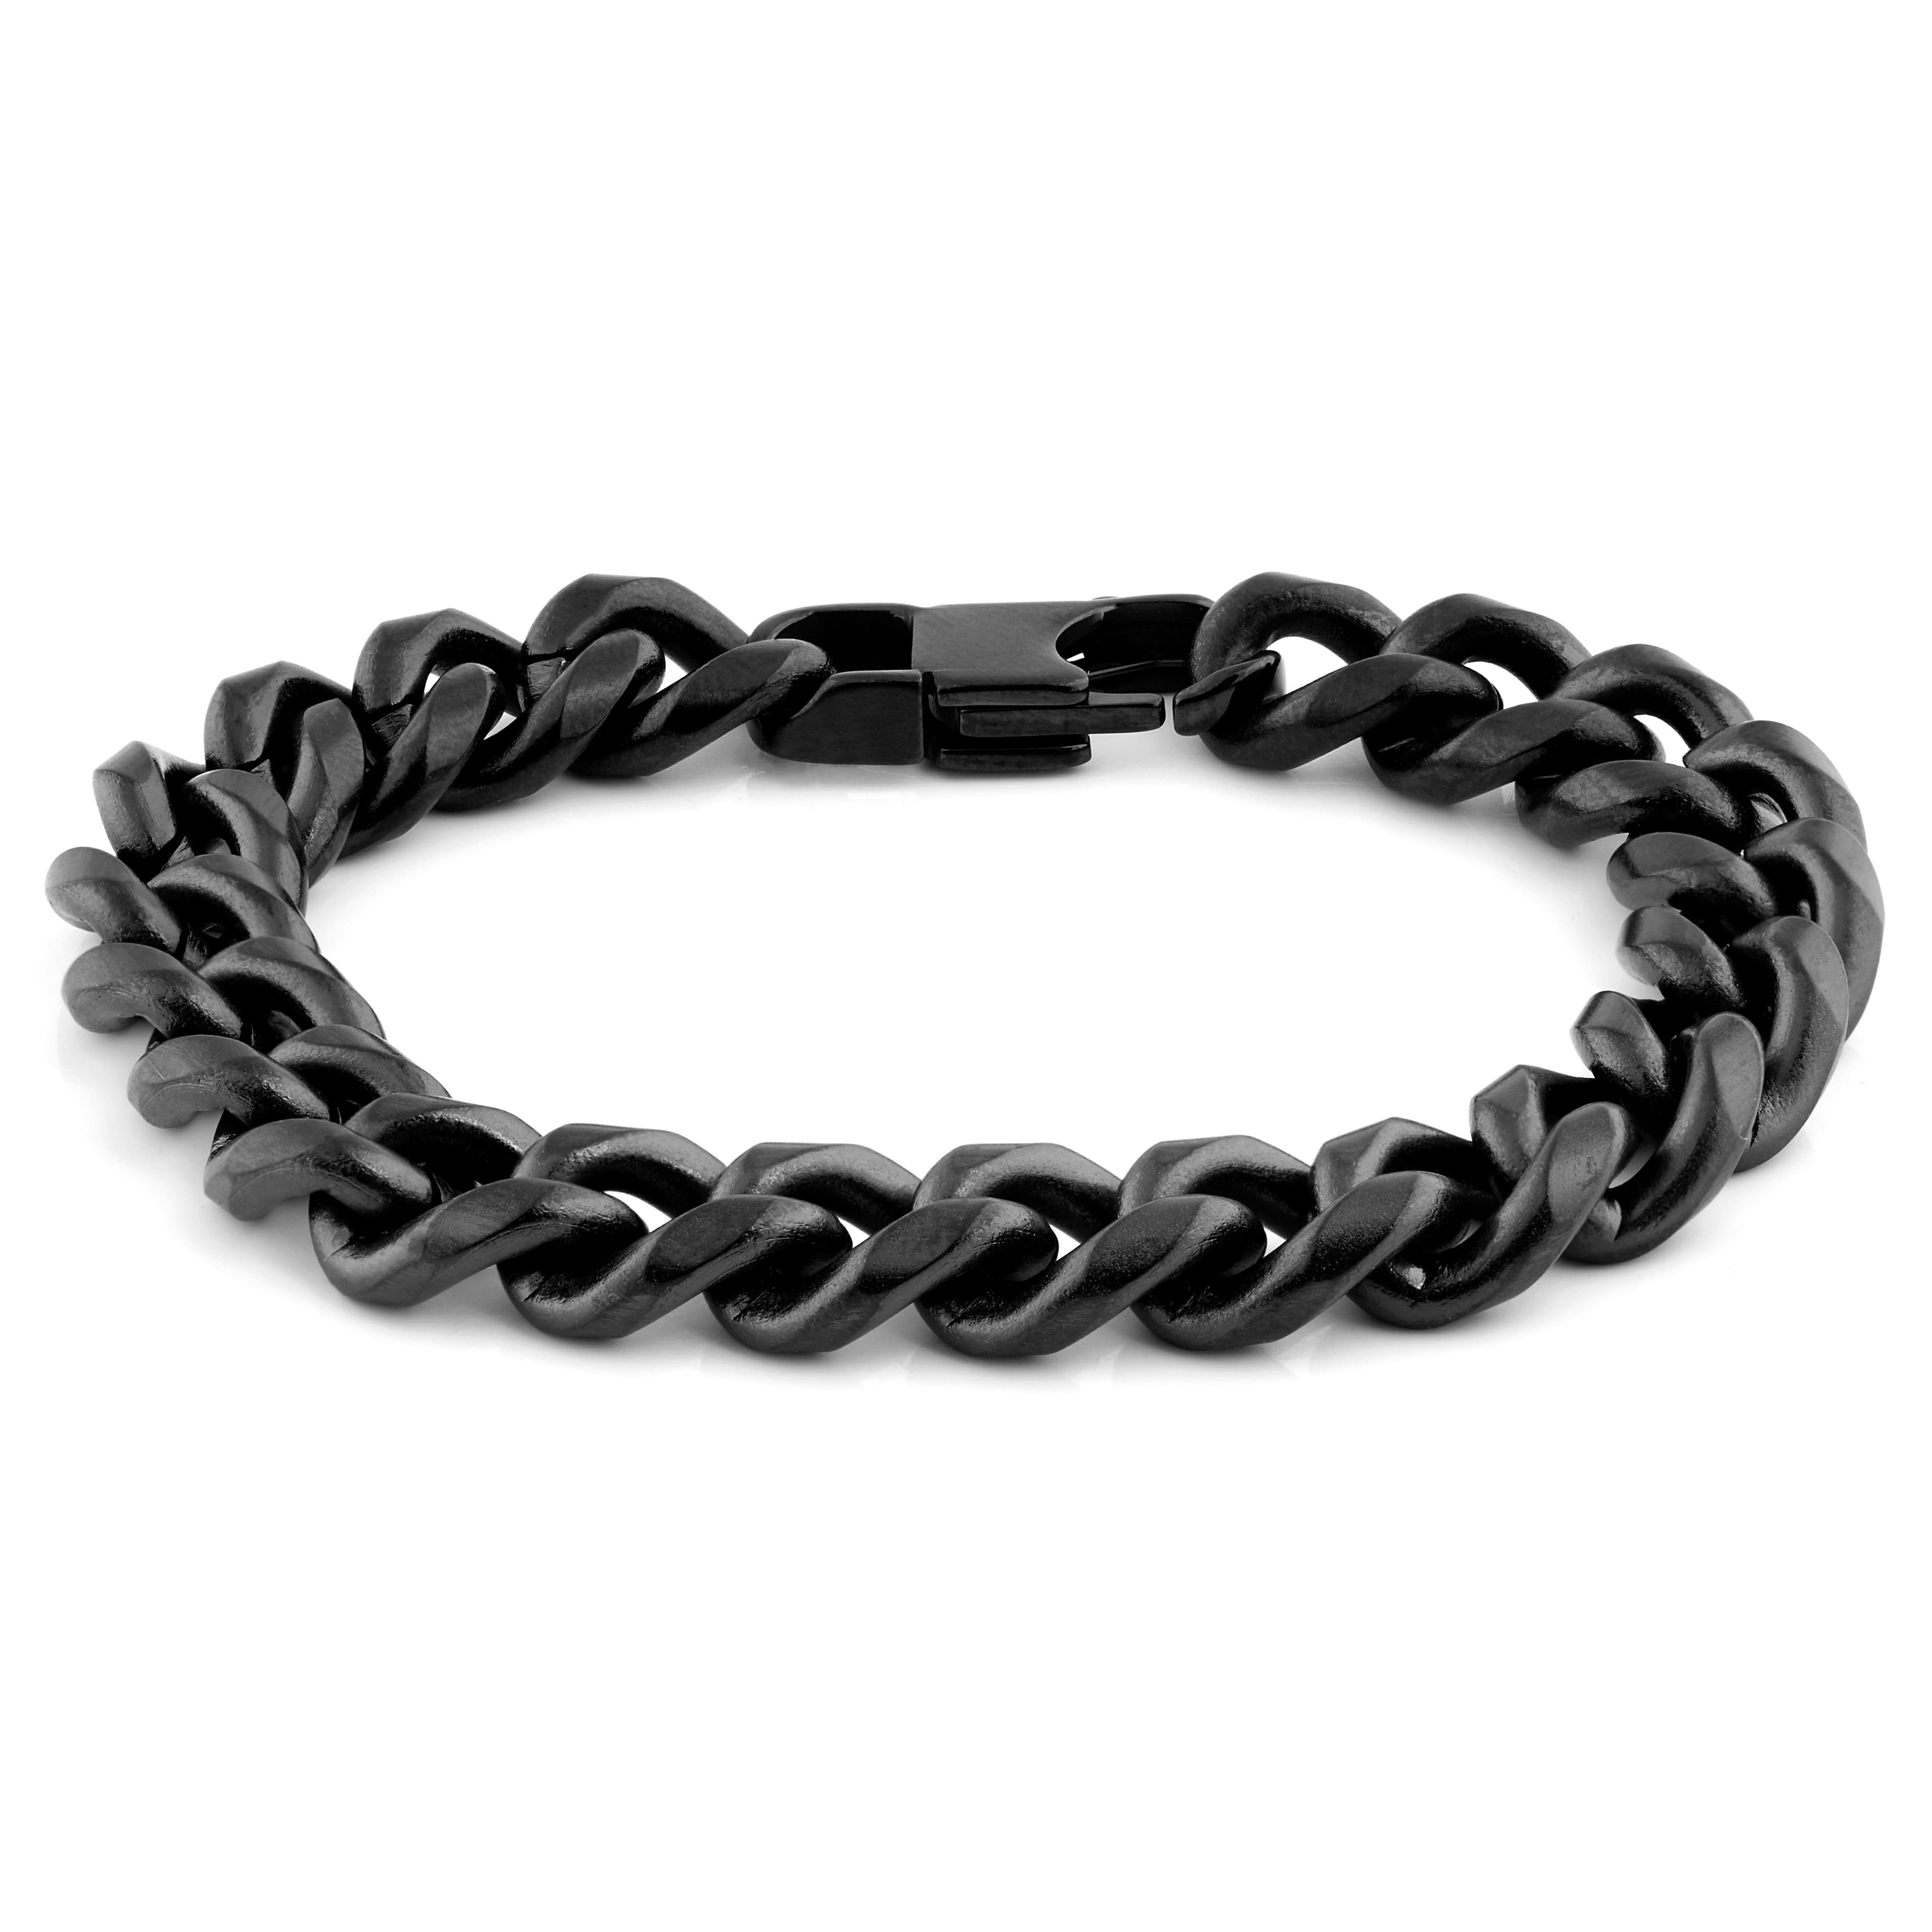 10 mm Black Chain Bracelet